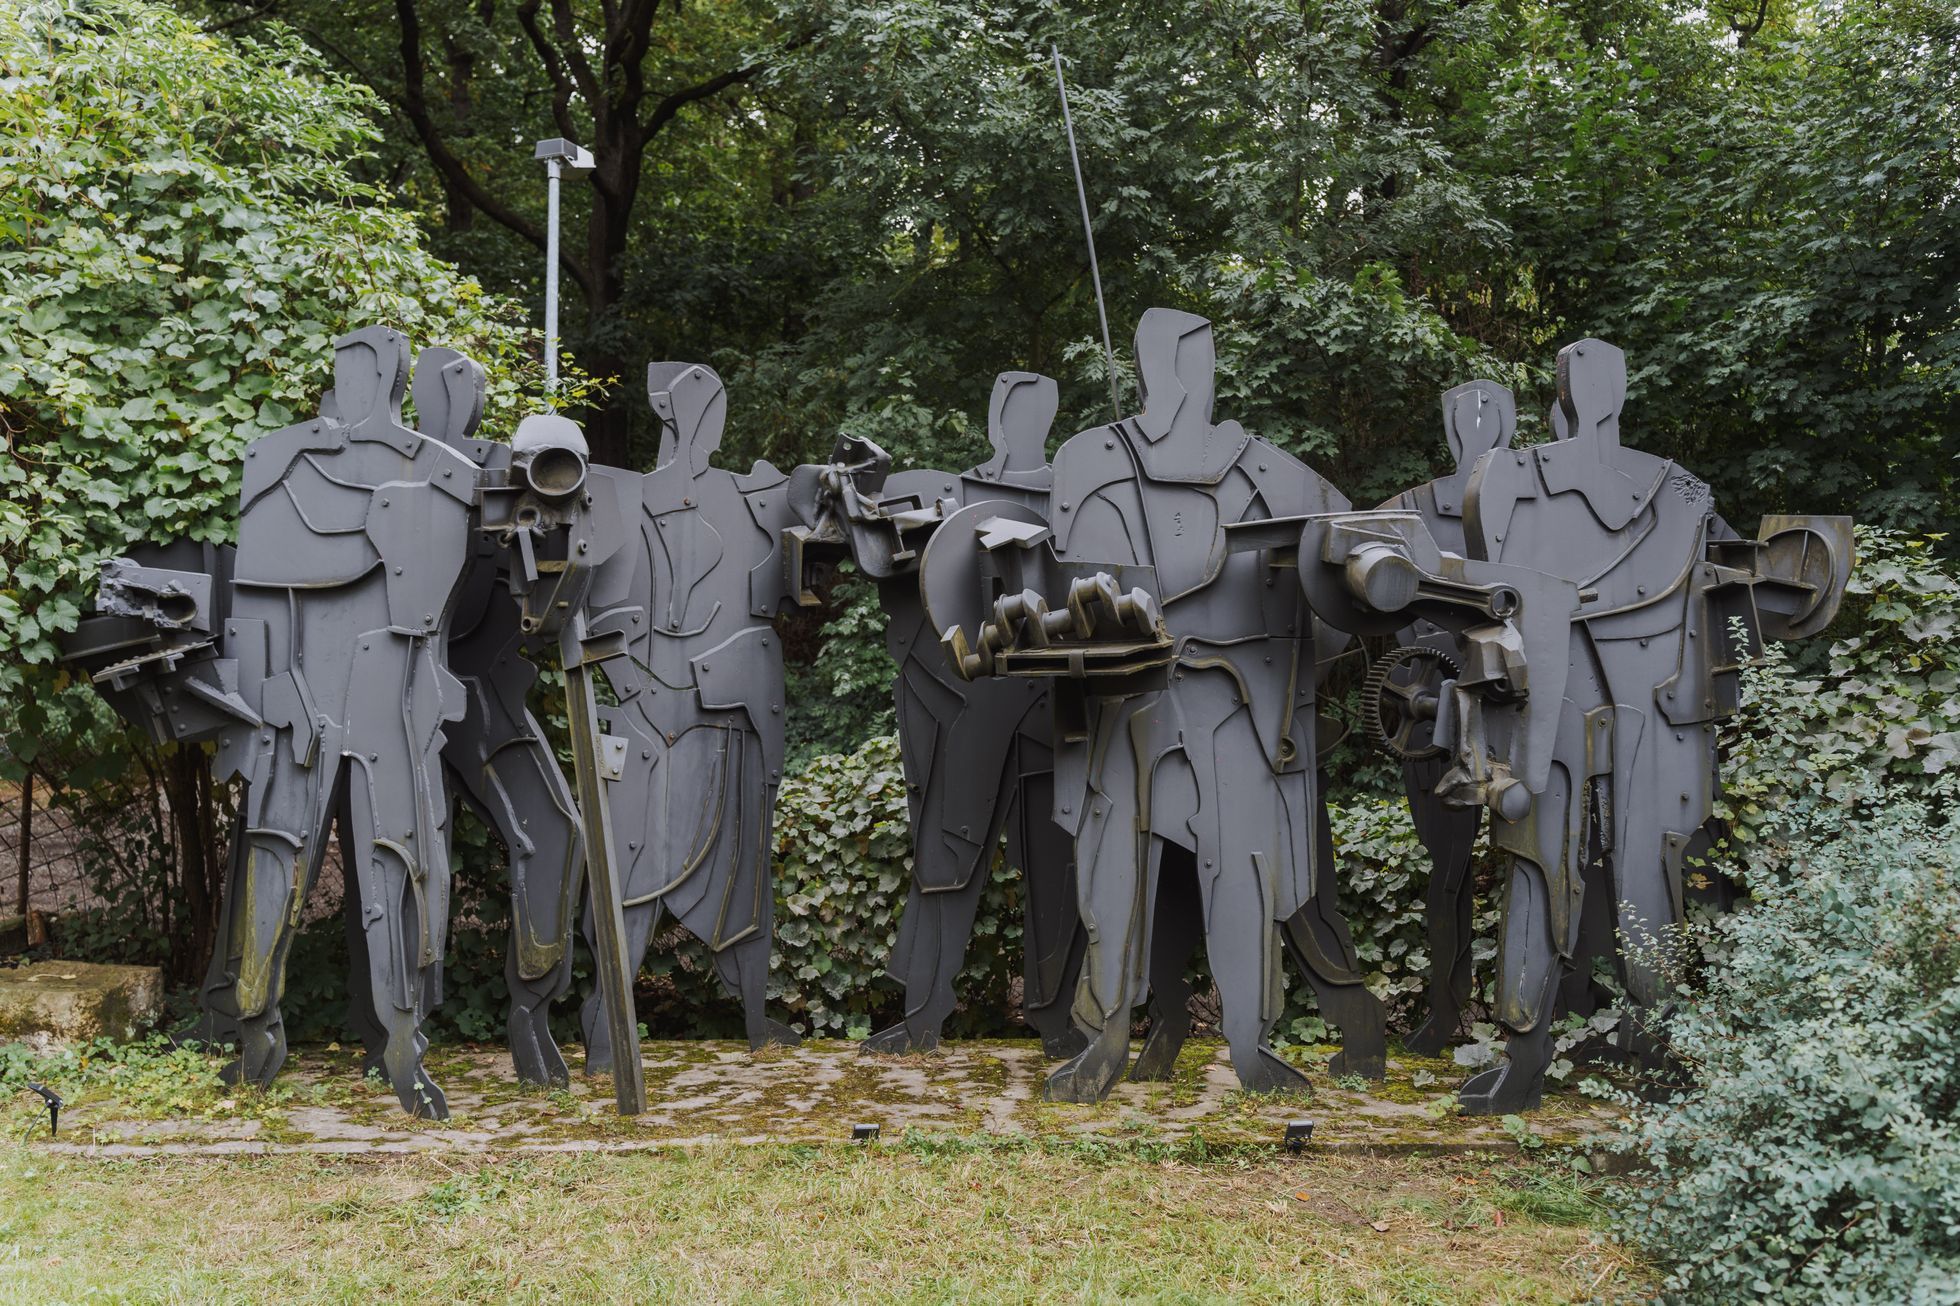 Ten men of steel are waiting in the garden.  He opened a studio of important sculptors